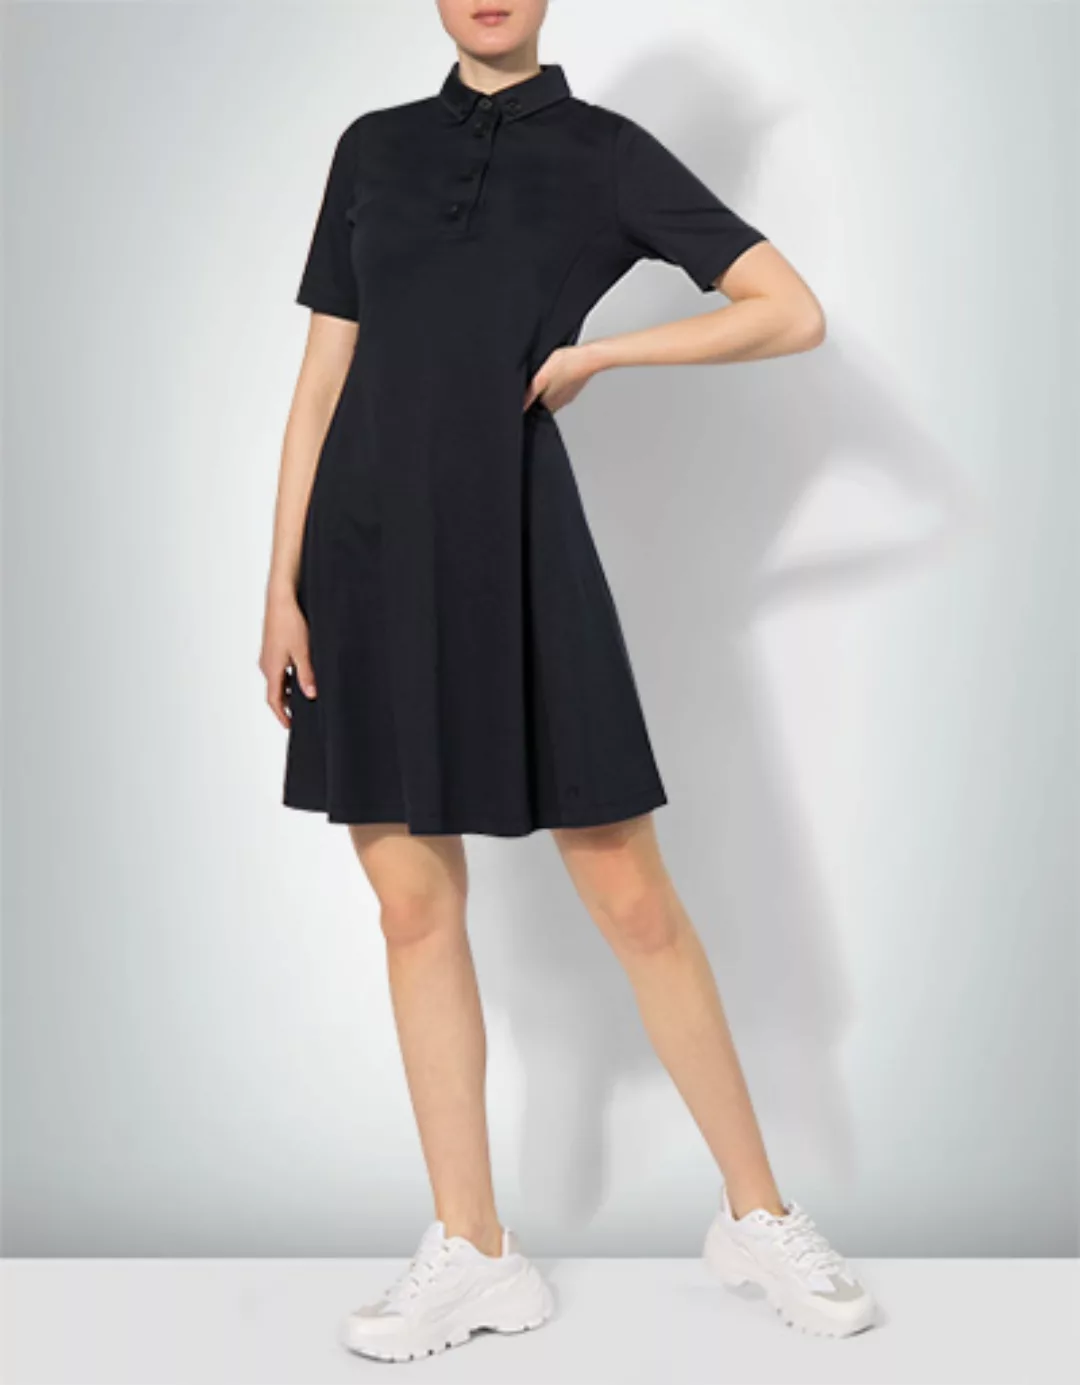 Marc O'Polo Damen Kleid M03 3024 59073/897 günstig online kaufen